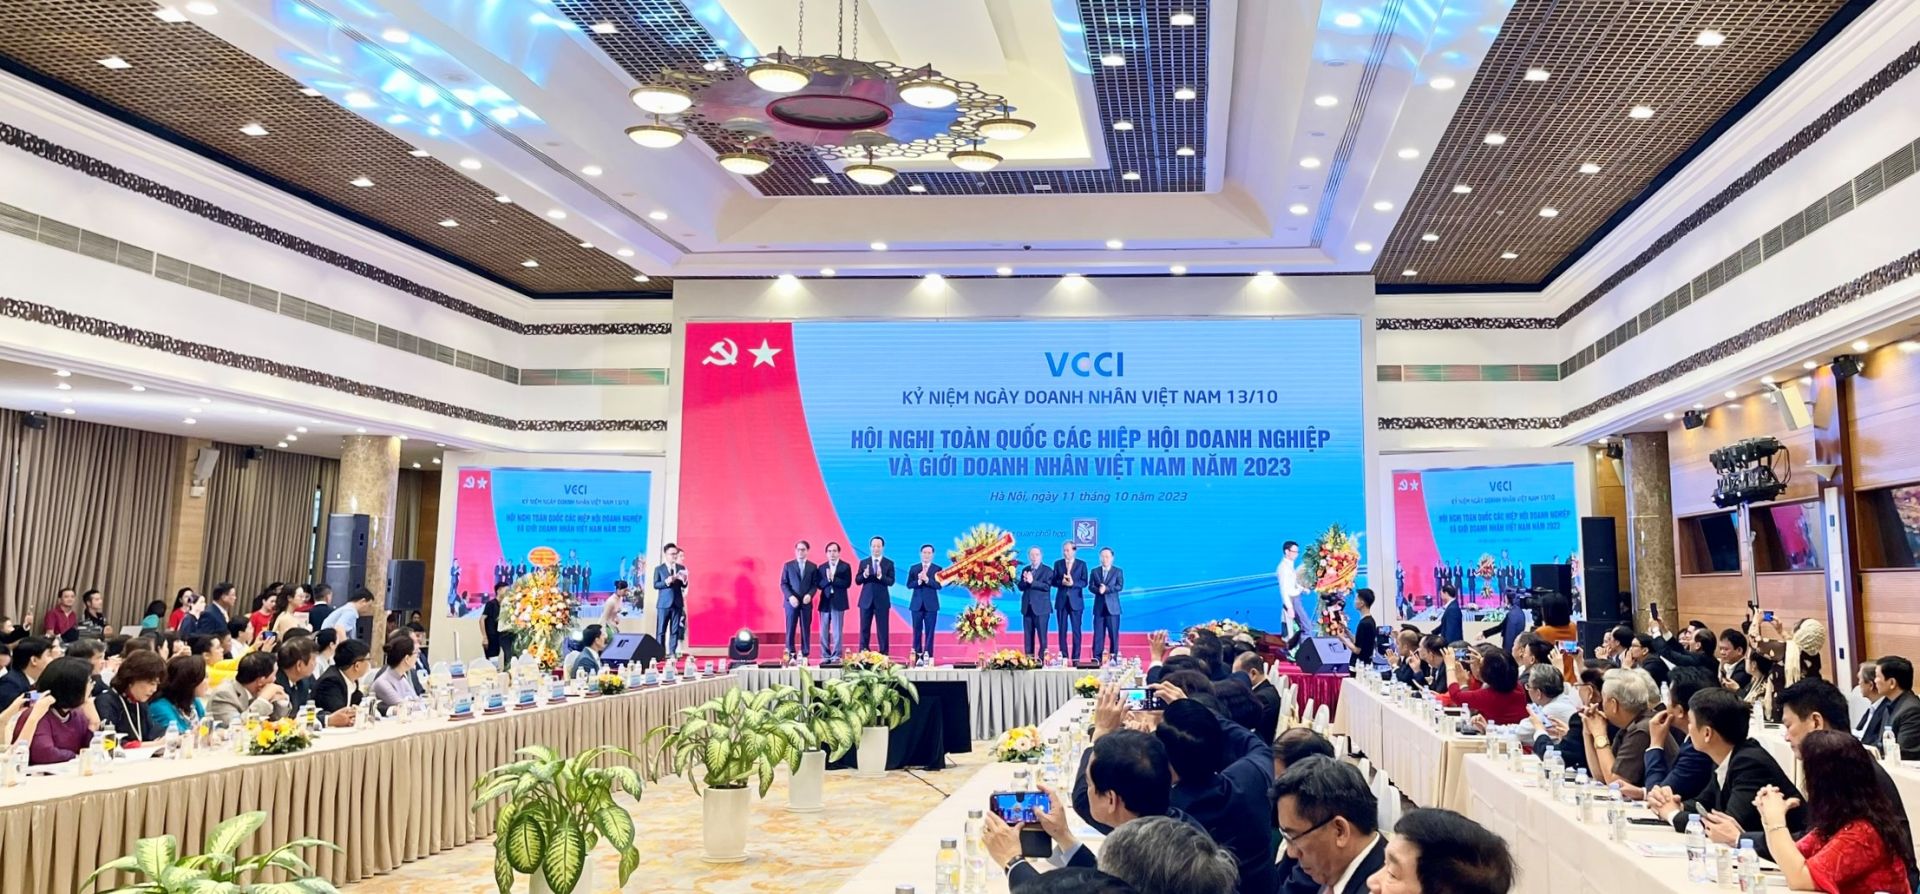 Đại diện cộng đồng doanh nghiệp nhận hoa chúc mừng từ lãnh đạo Nhà nước nhân dịp kỳ niệm Ngày Doanh nhân Việt Nam